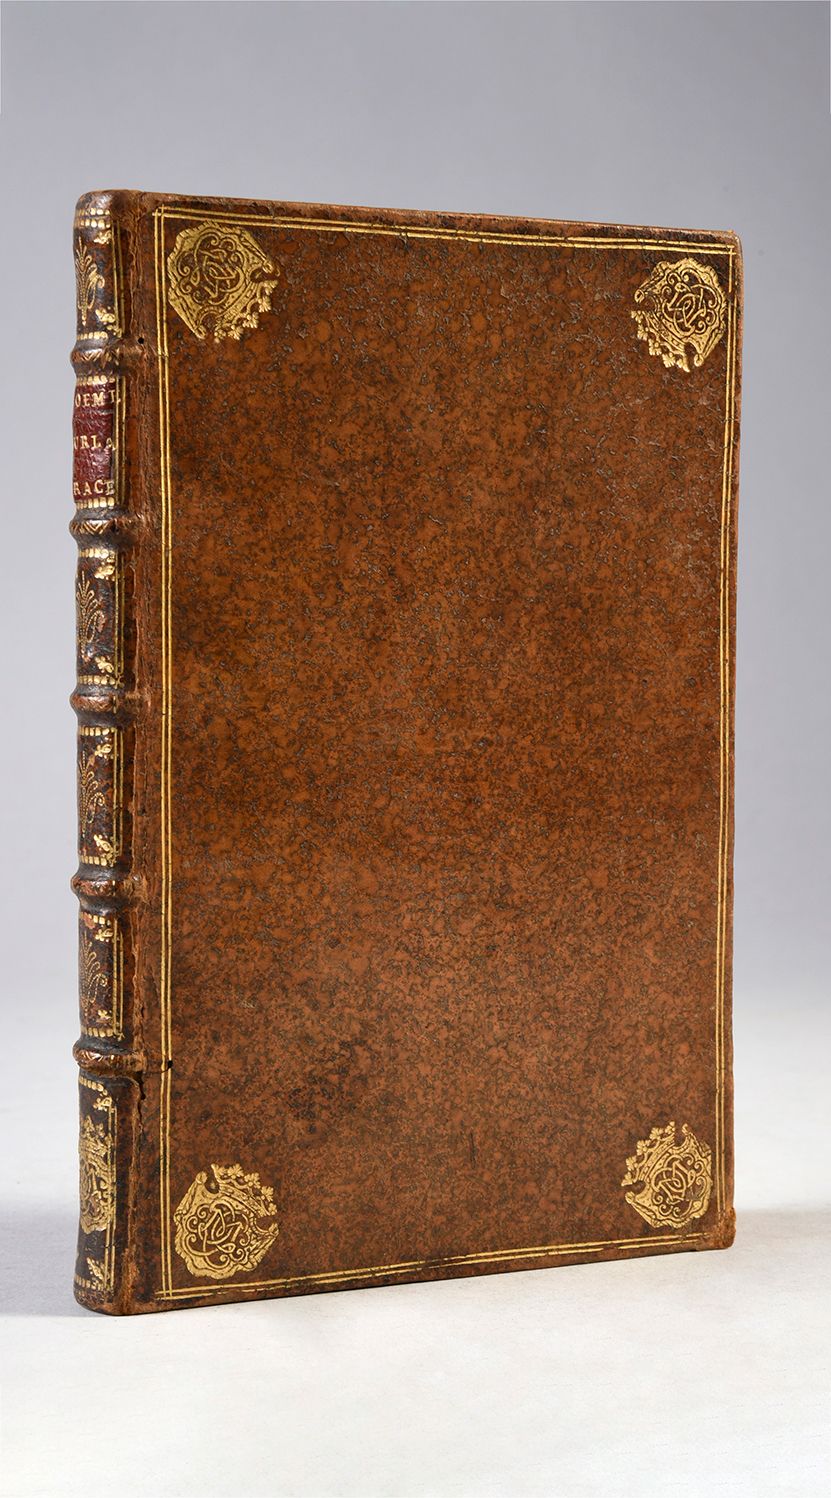 [RACINE, Louis] Poëme sur la grâce
P., 1722. 
Titel, XIII, [1], 89, [1] S. Verei&hellip;